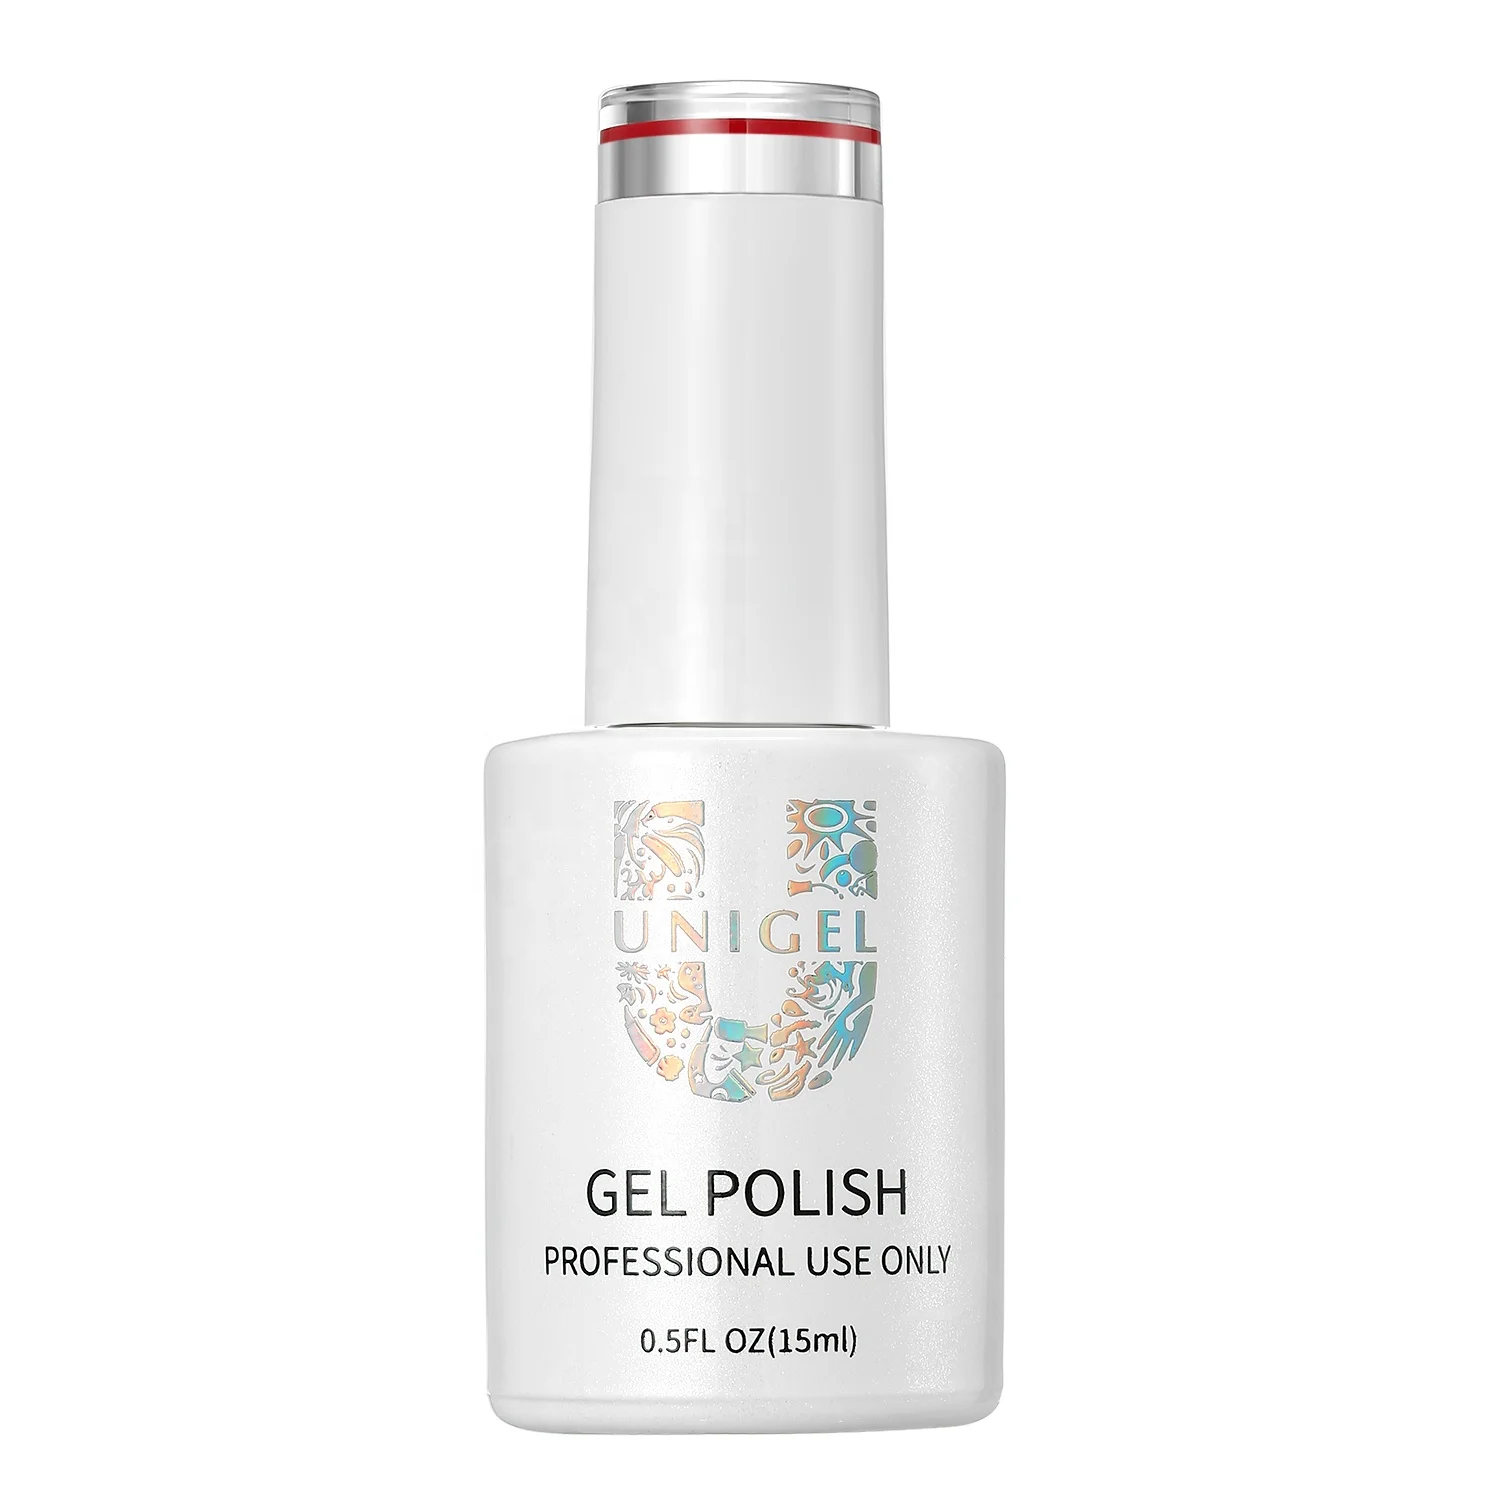 

Wholesale Cheap Lasting Long Bright Nail Gel Polish Non Toxic Organic UV Gel Nail Polish Beauty Nail Customized Private Labels, 12 colors